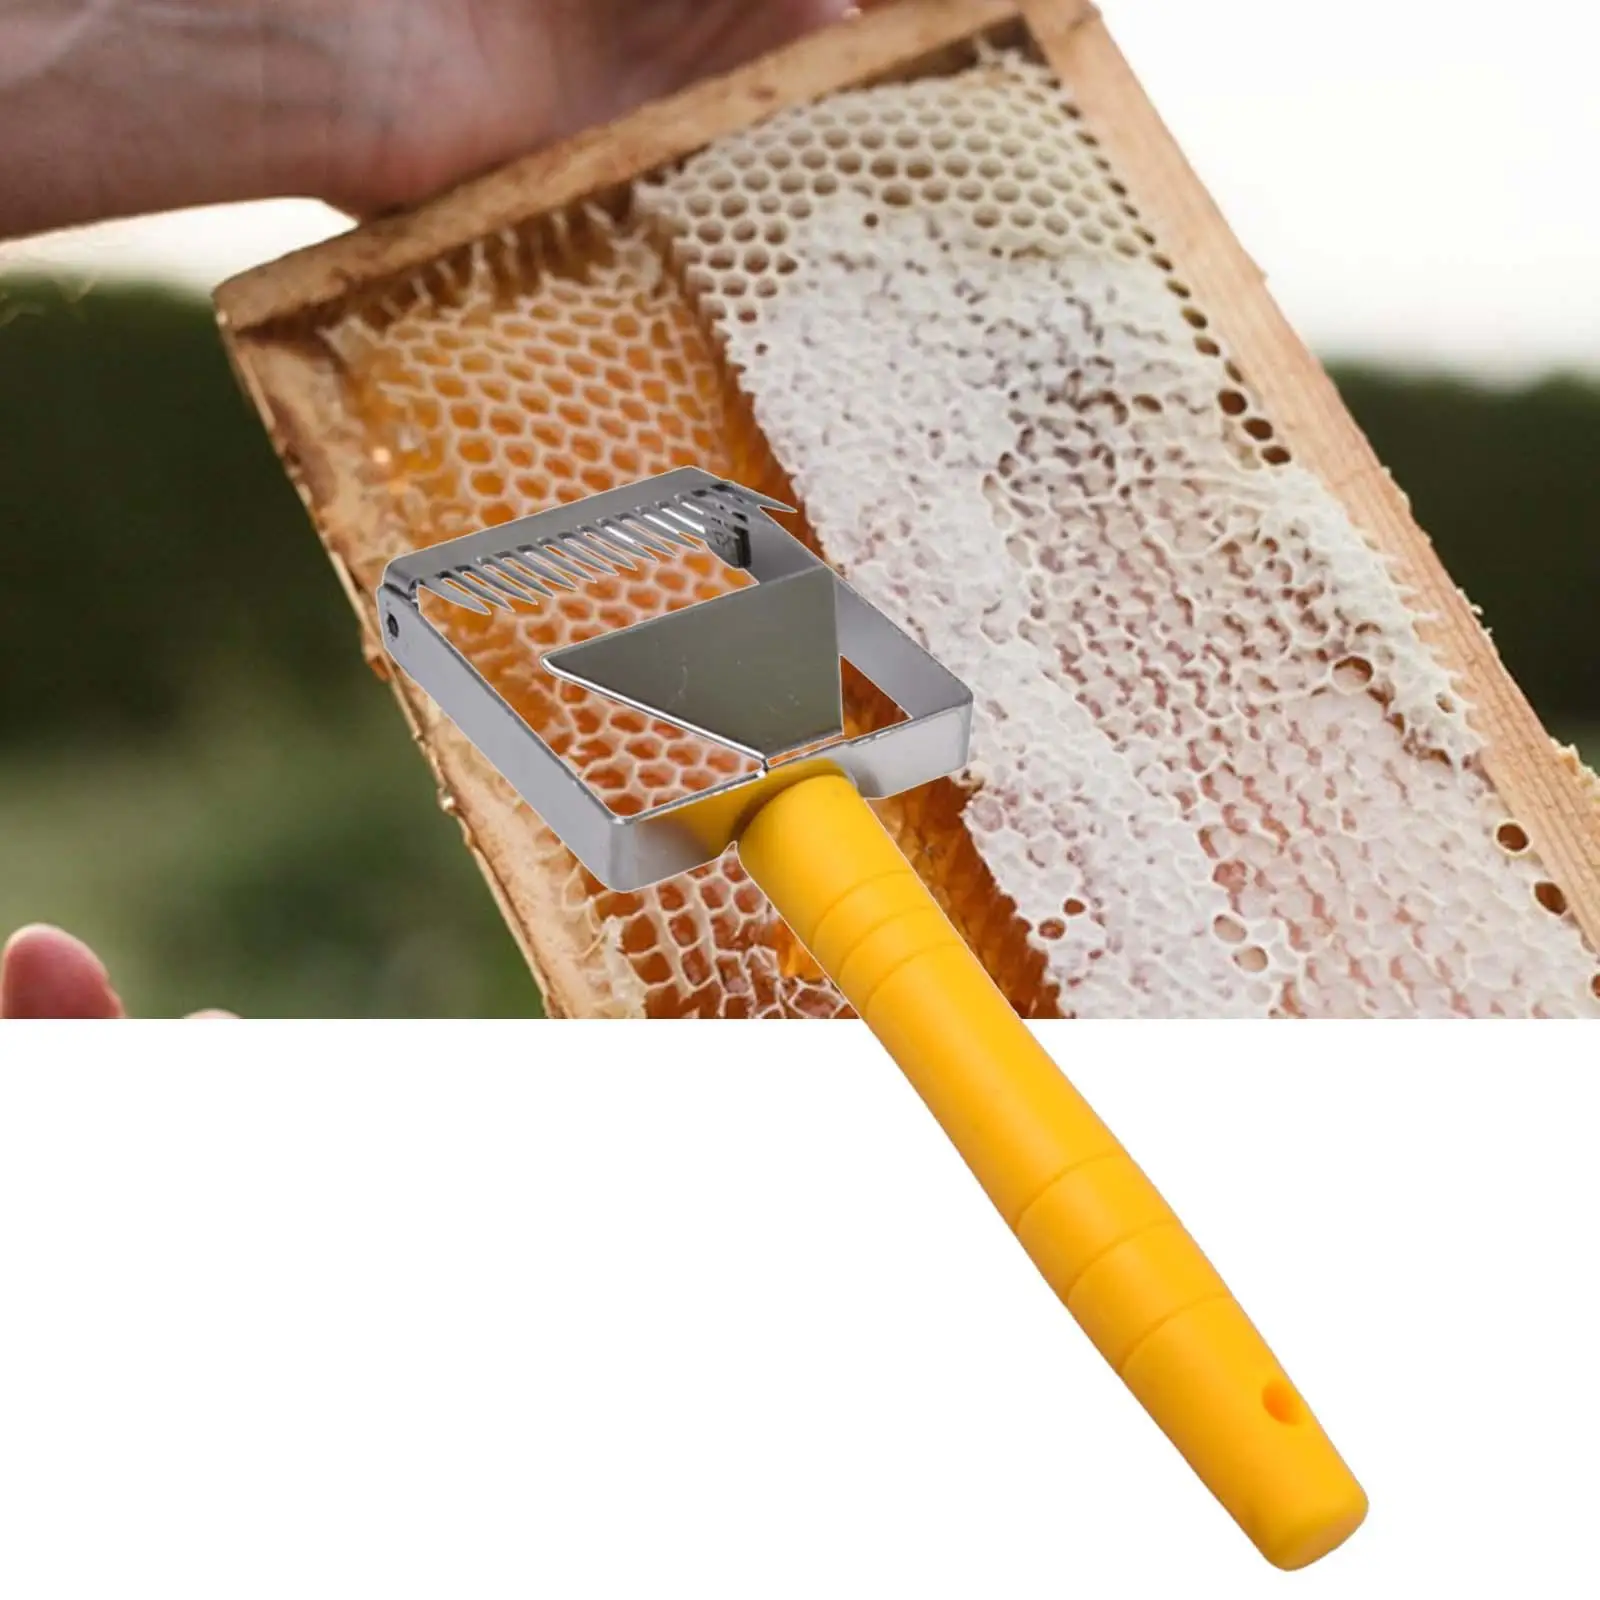 Bee Uncapping Fork Beehive Bee Keeping Tool for Beekeeping Tool Beekeeper Hive Equipment Tool Scraper Tool Beekeeping Hook